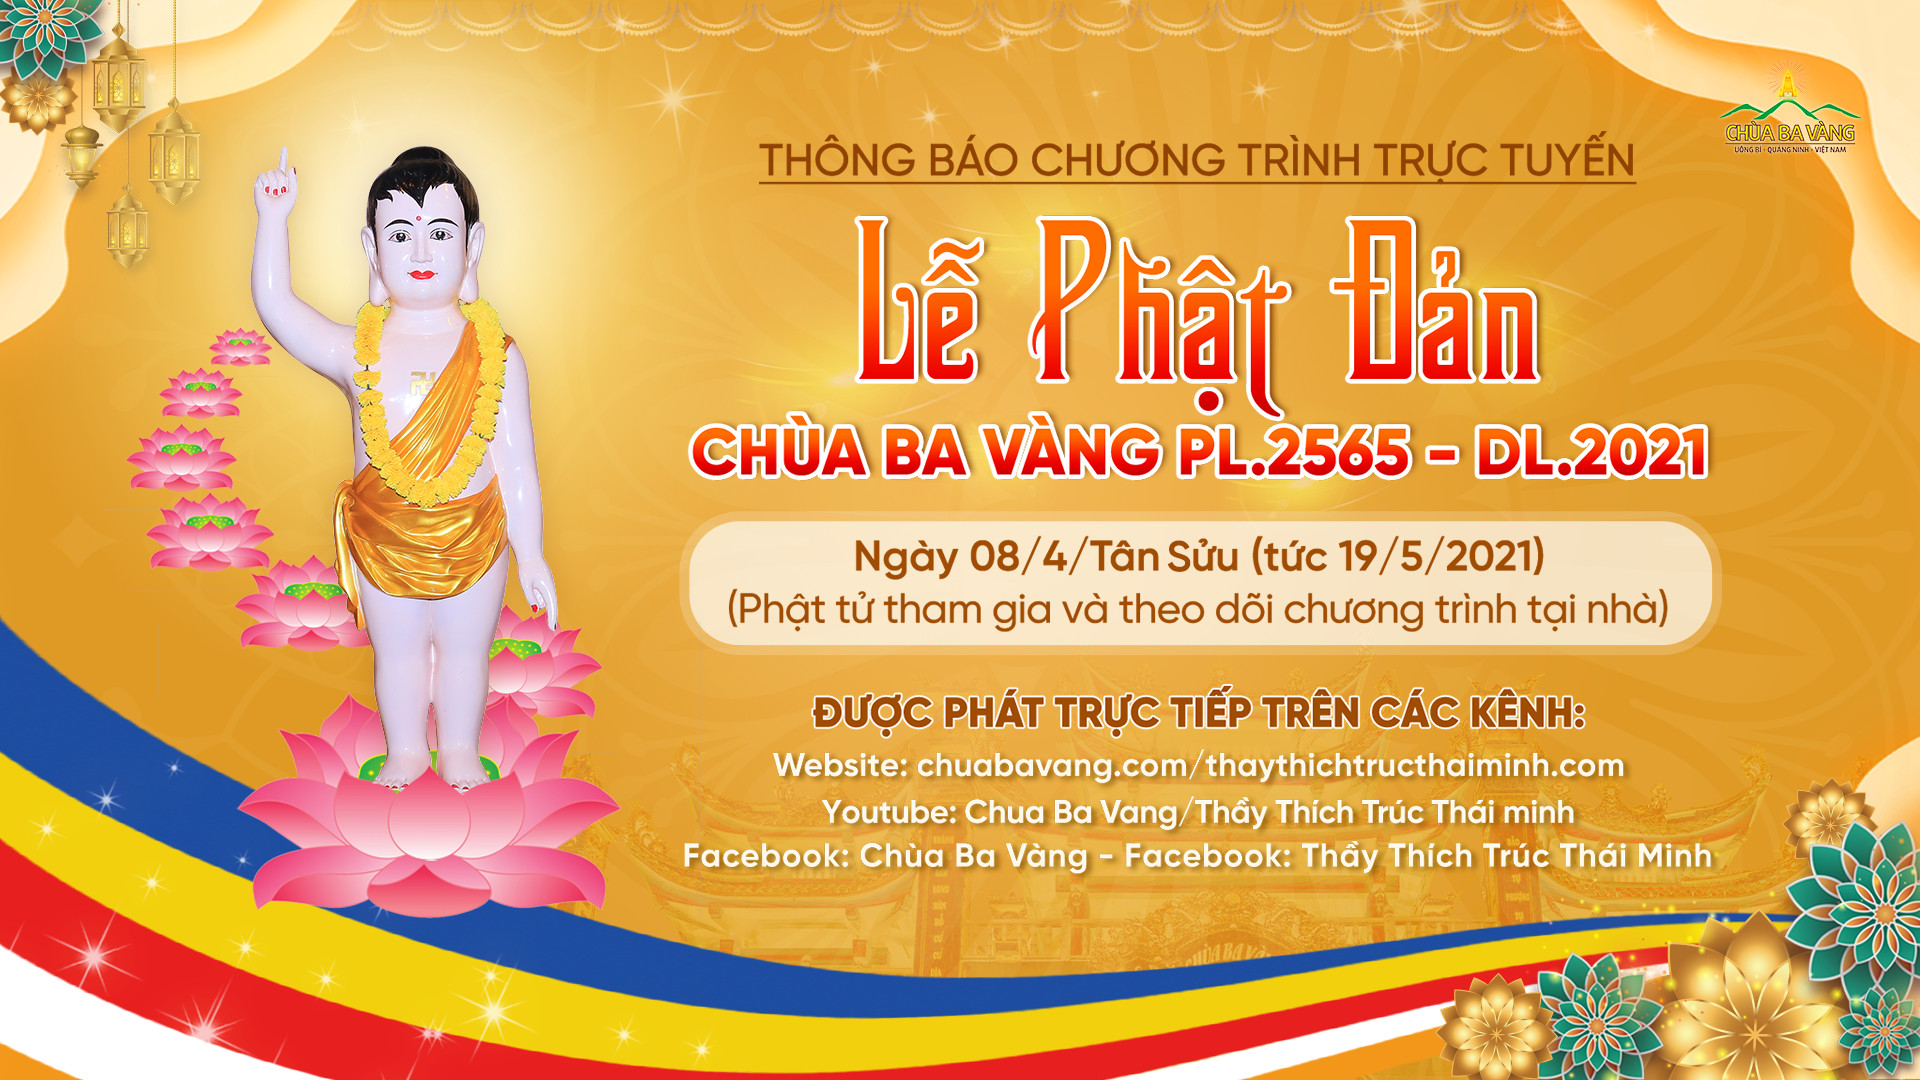 Thông báo chương trình trực tuyến: Lễ Phật đản chùa Ba Vàng